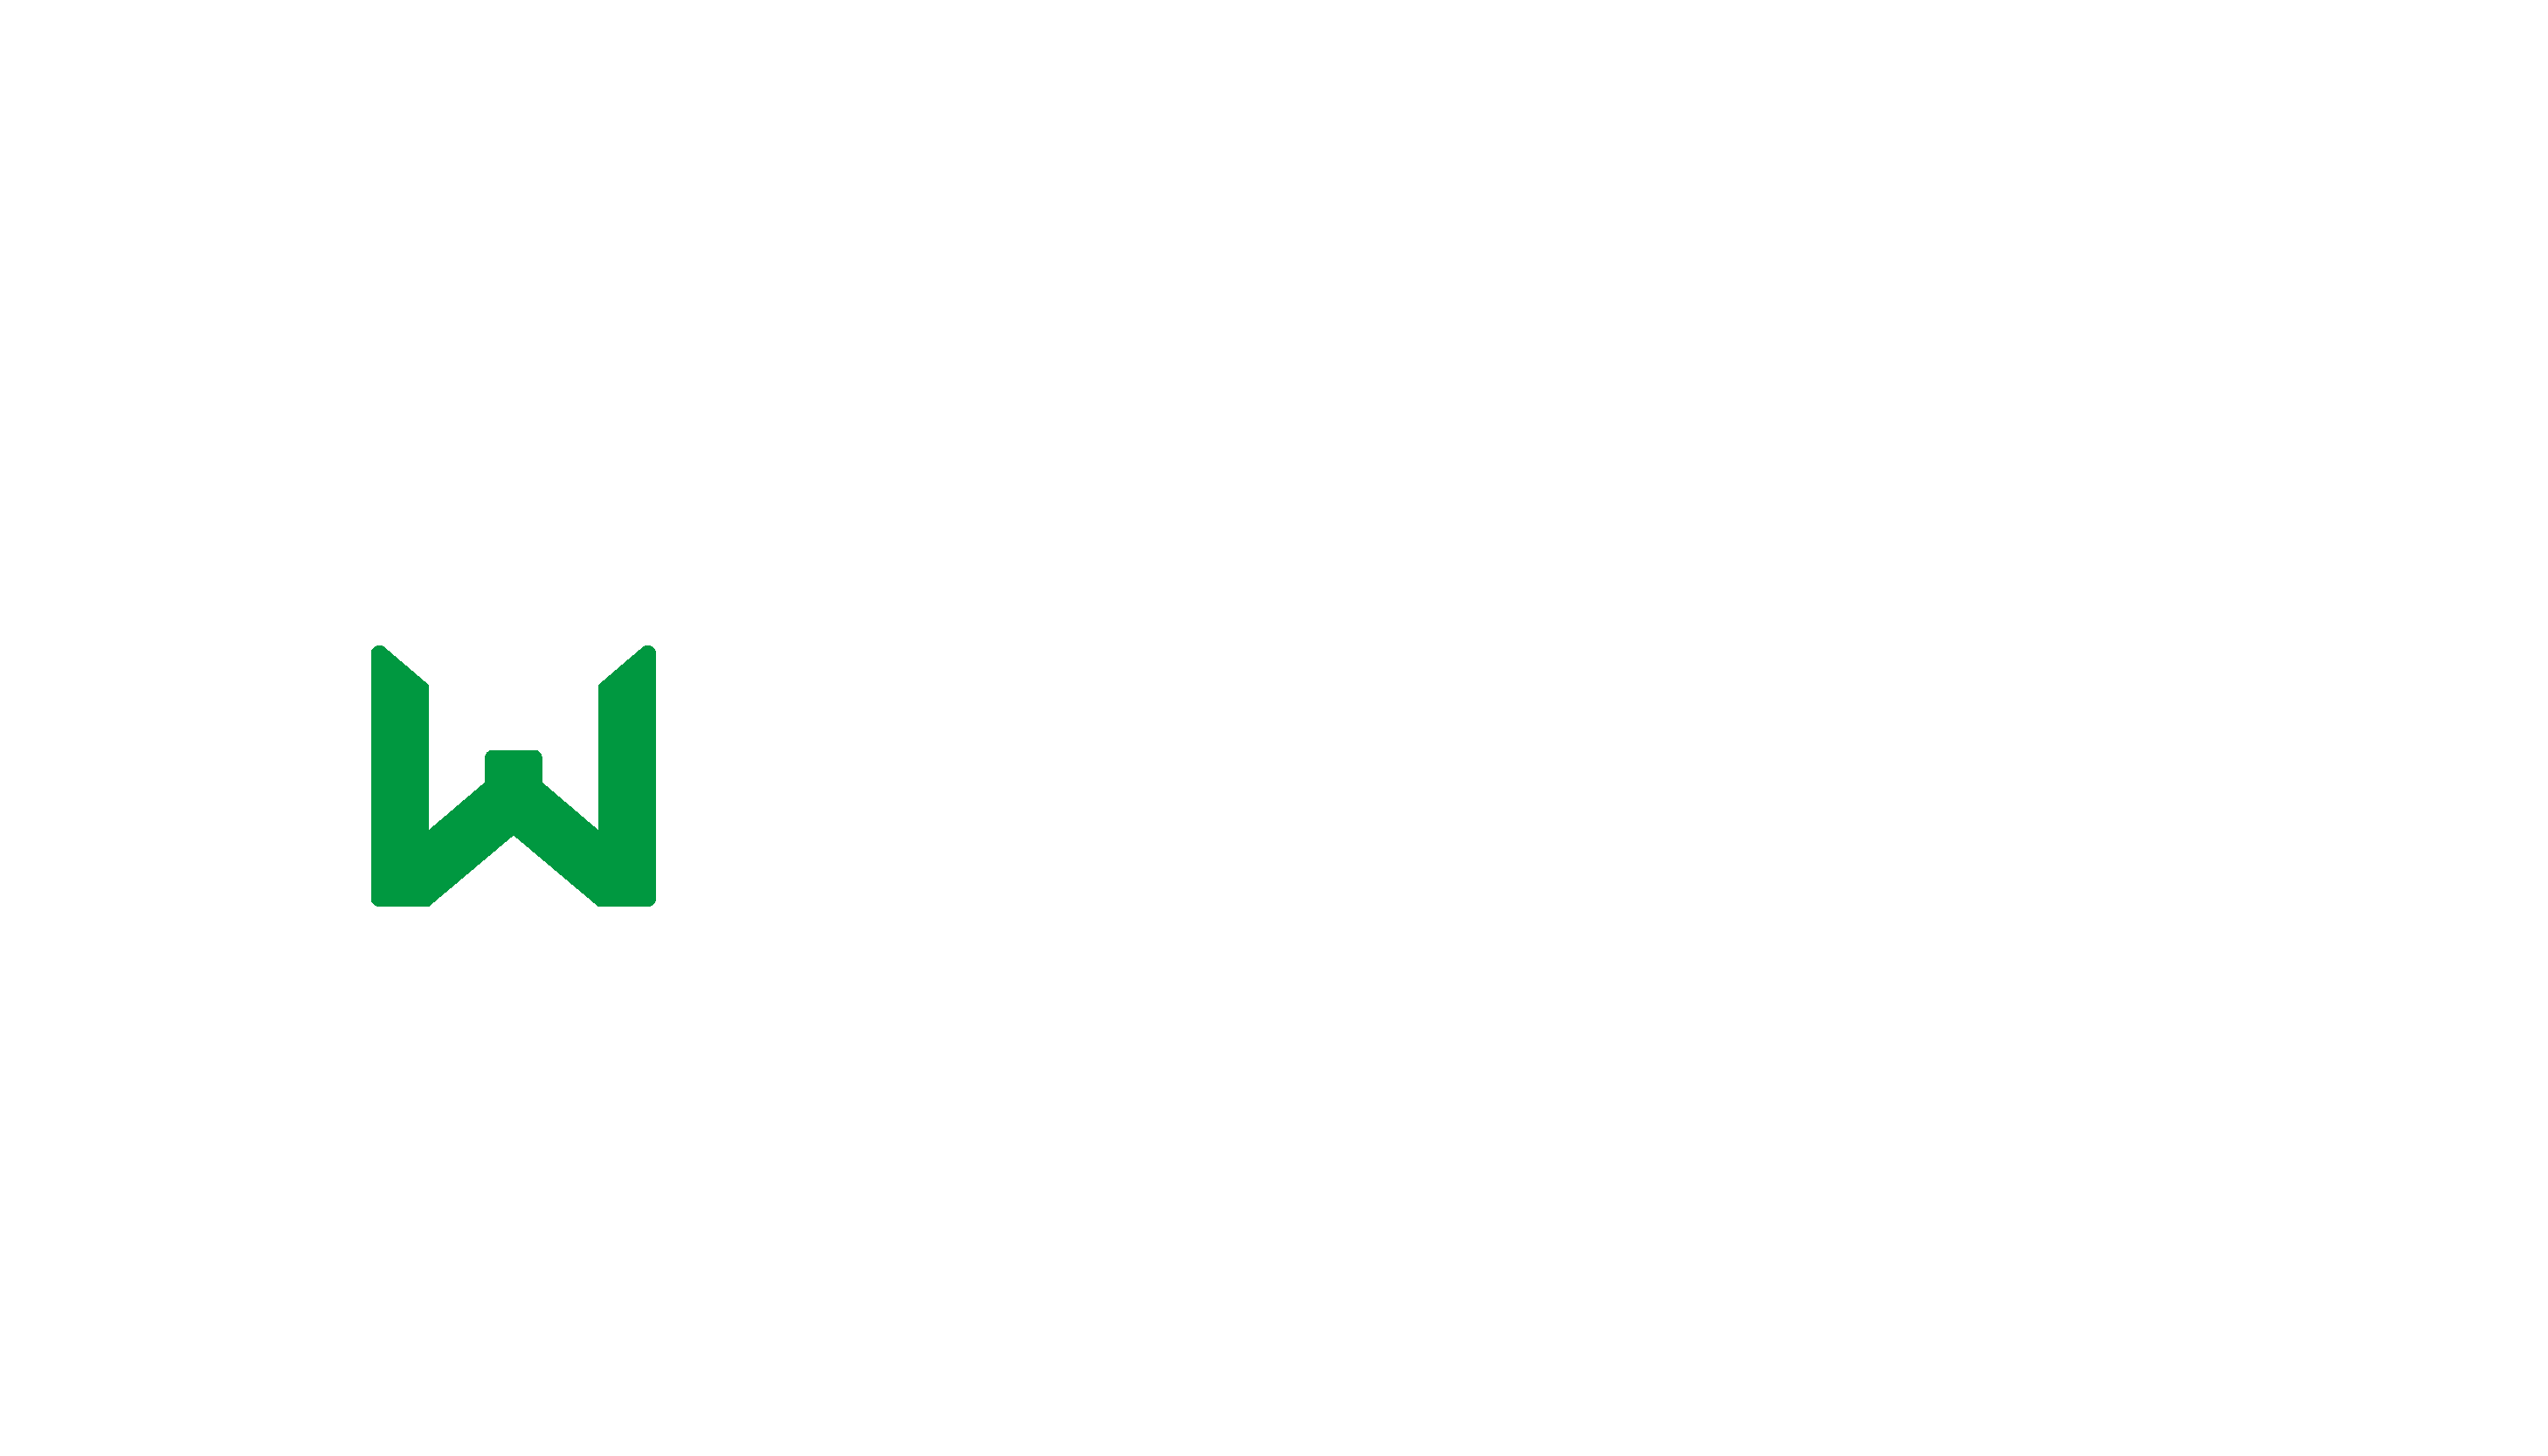 VDP Finder